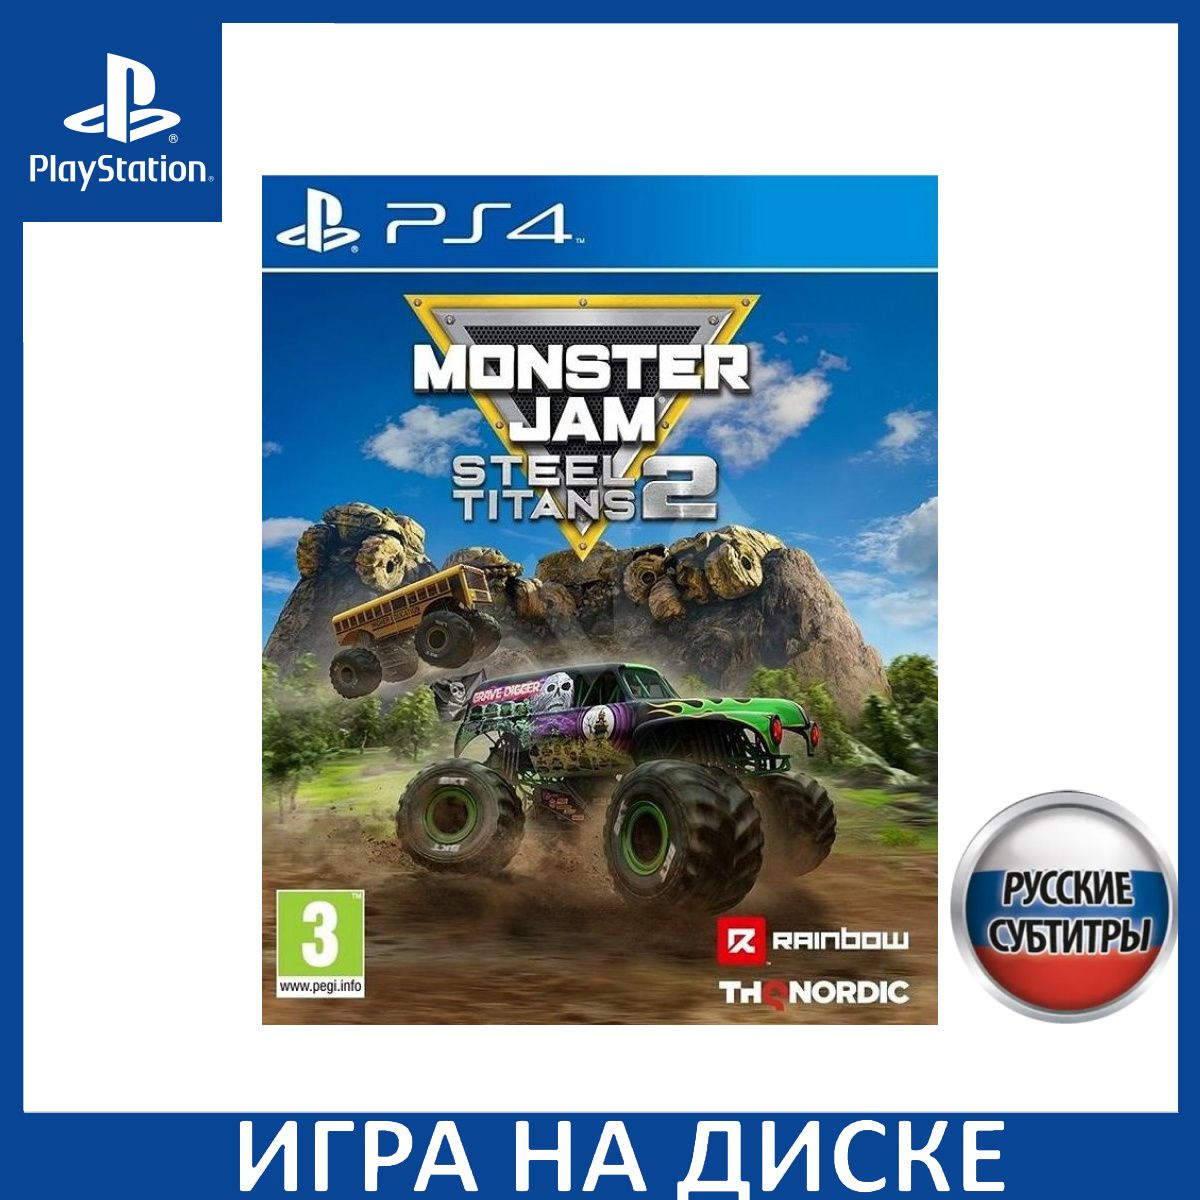 Диск с Игрой Monster Jam: Steel Titans 2 Русская Версия (PS4). Новый лицензионный запечатанный диск.